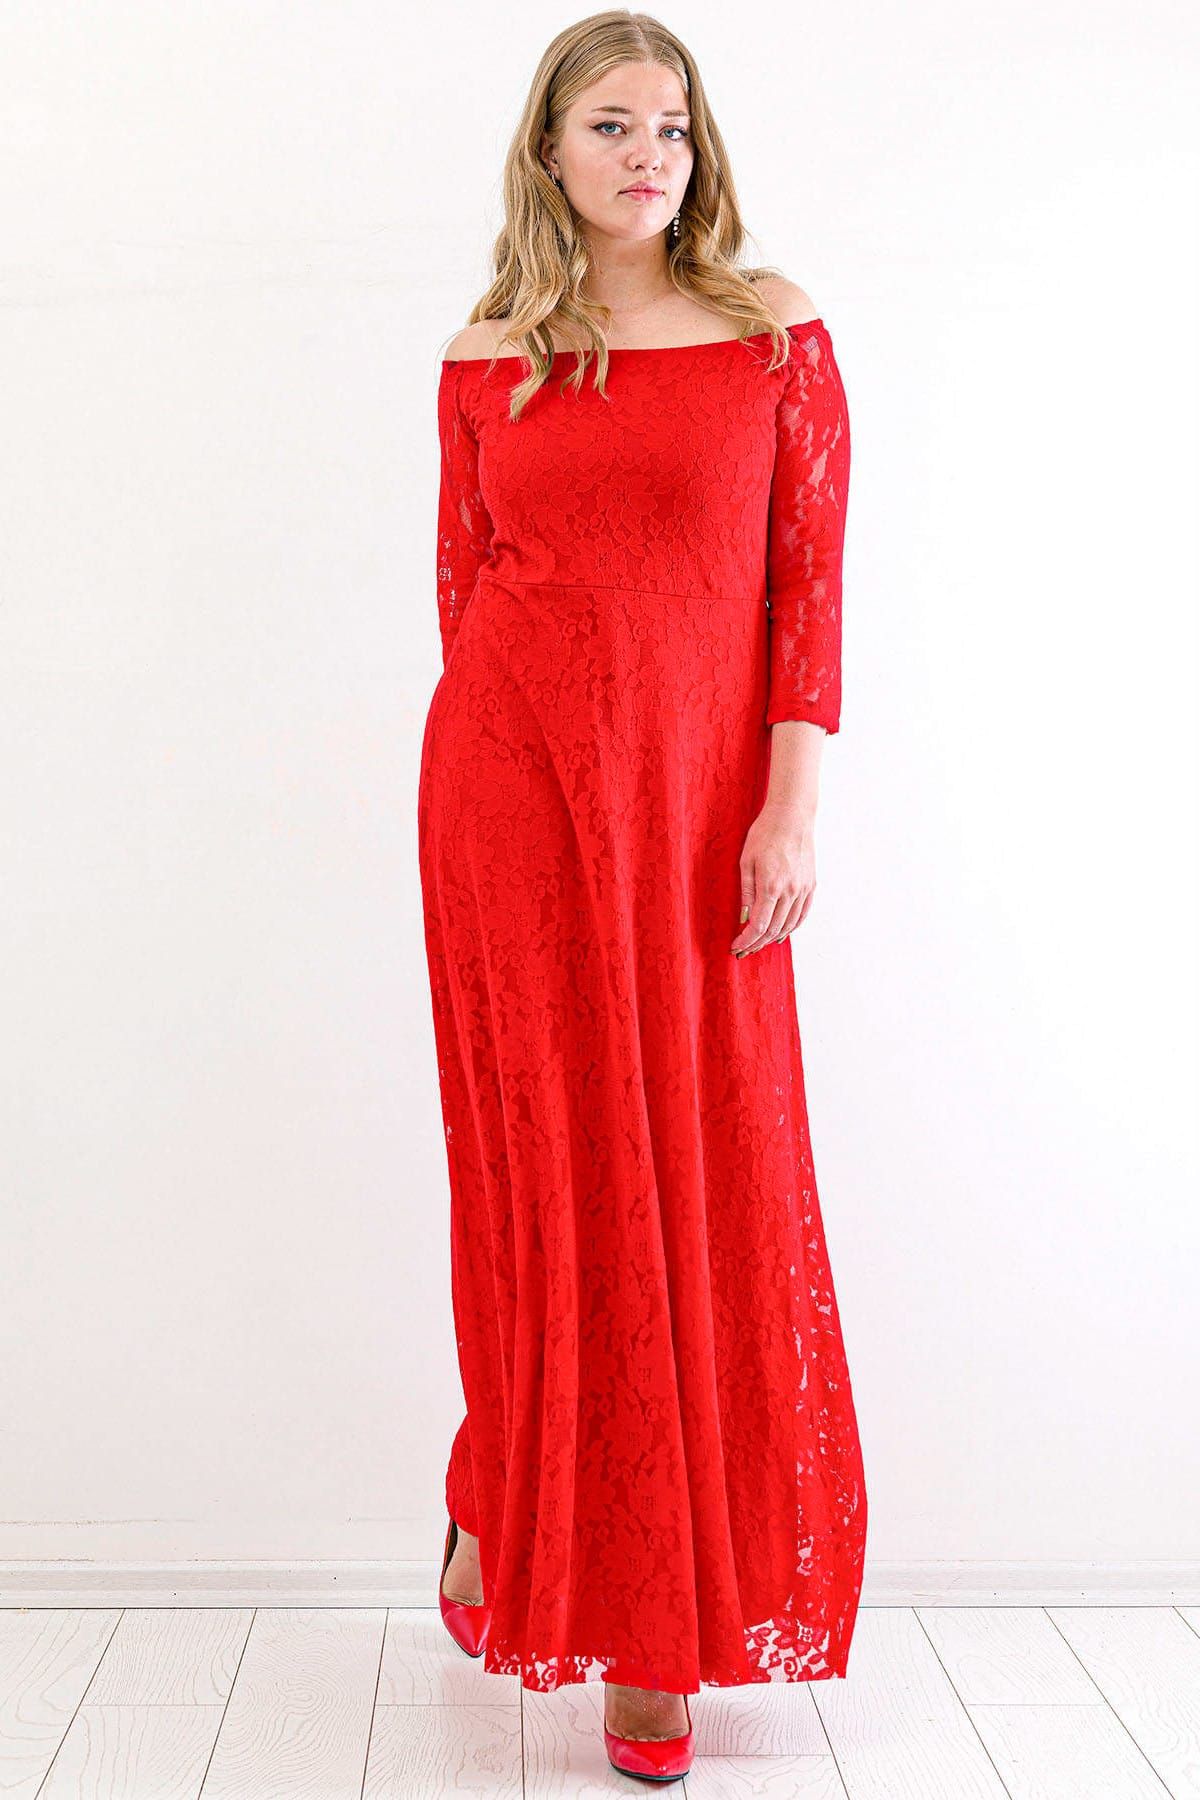 Angelino Kadın Yakası Lastikli Komple Dantel Detay Abiye Mezuniyet Elbisesi KL8400u Kırmızı T109956